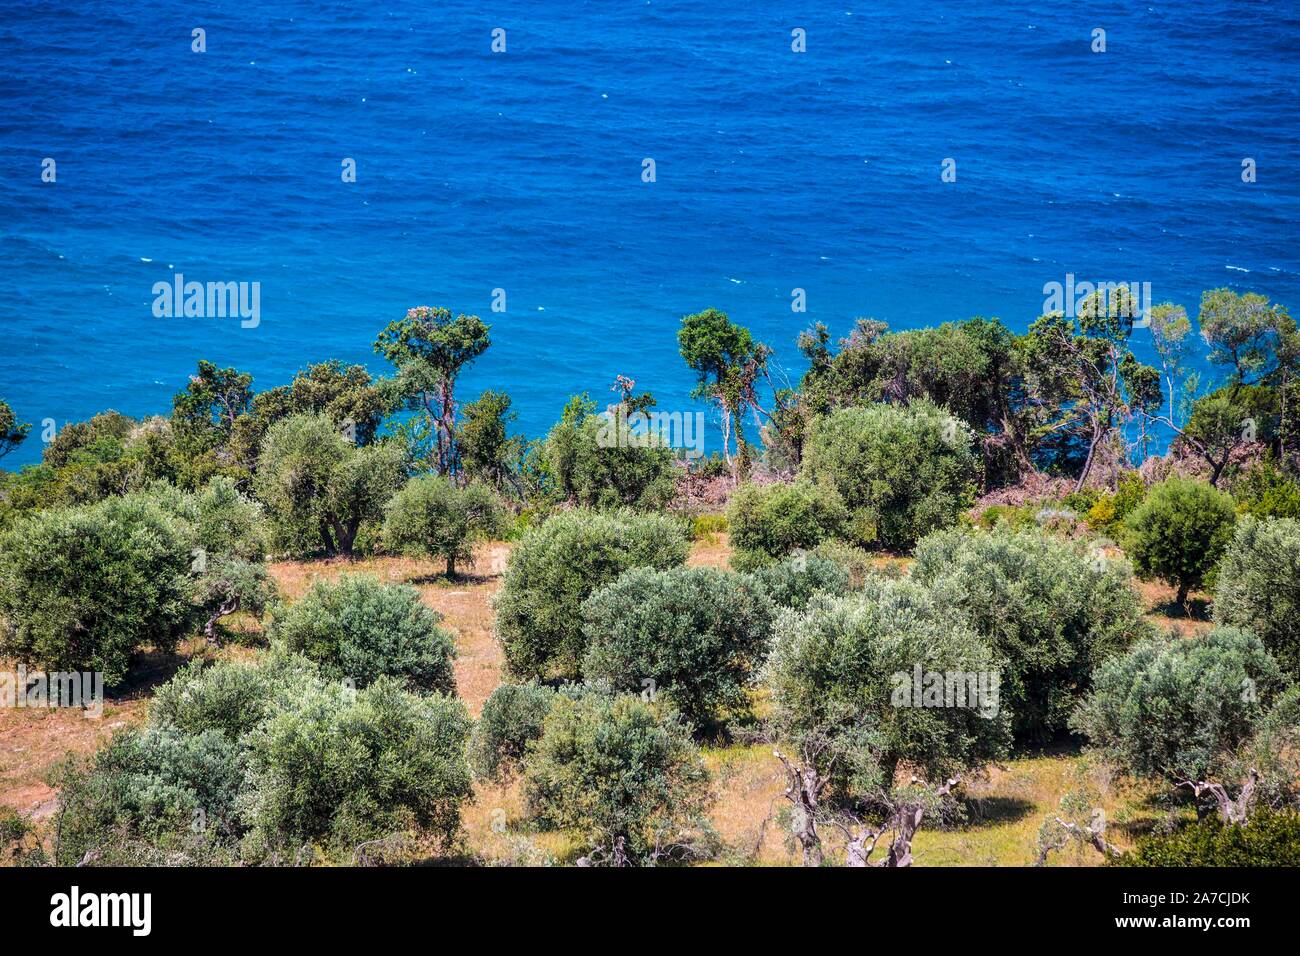 Olivenbäume wachsen auf den Küstenstreifen des Mittelmeeres, genauer des Thyrrenischen Meeres, in der südlichen Hälfte der Toskana in Italien. Der Oli Stock Photo